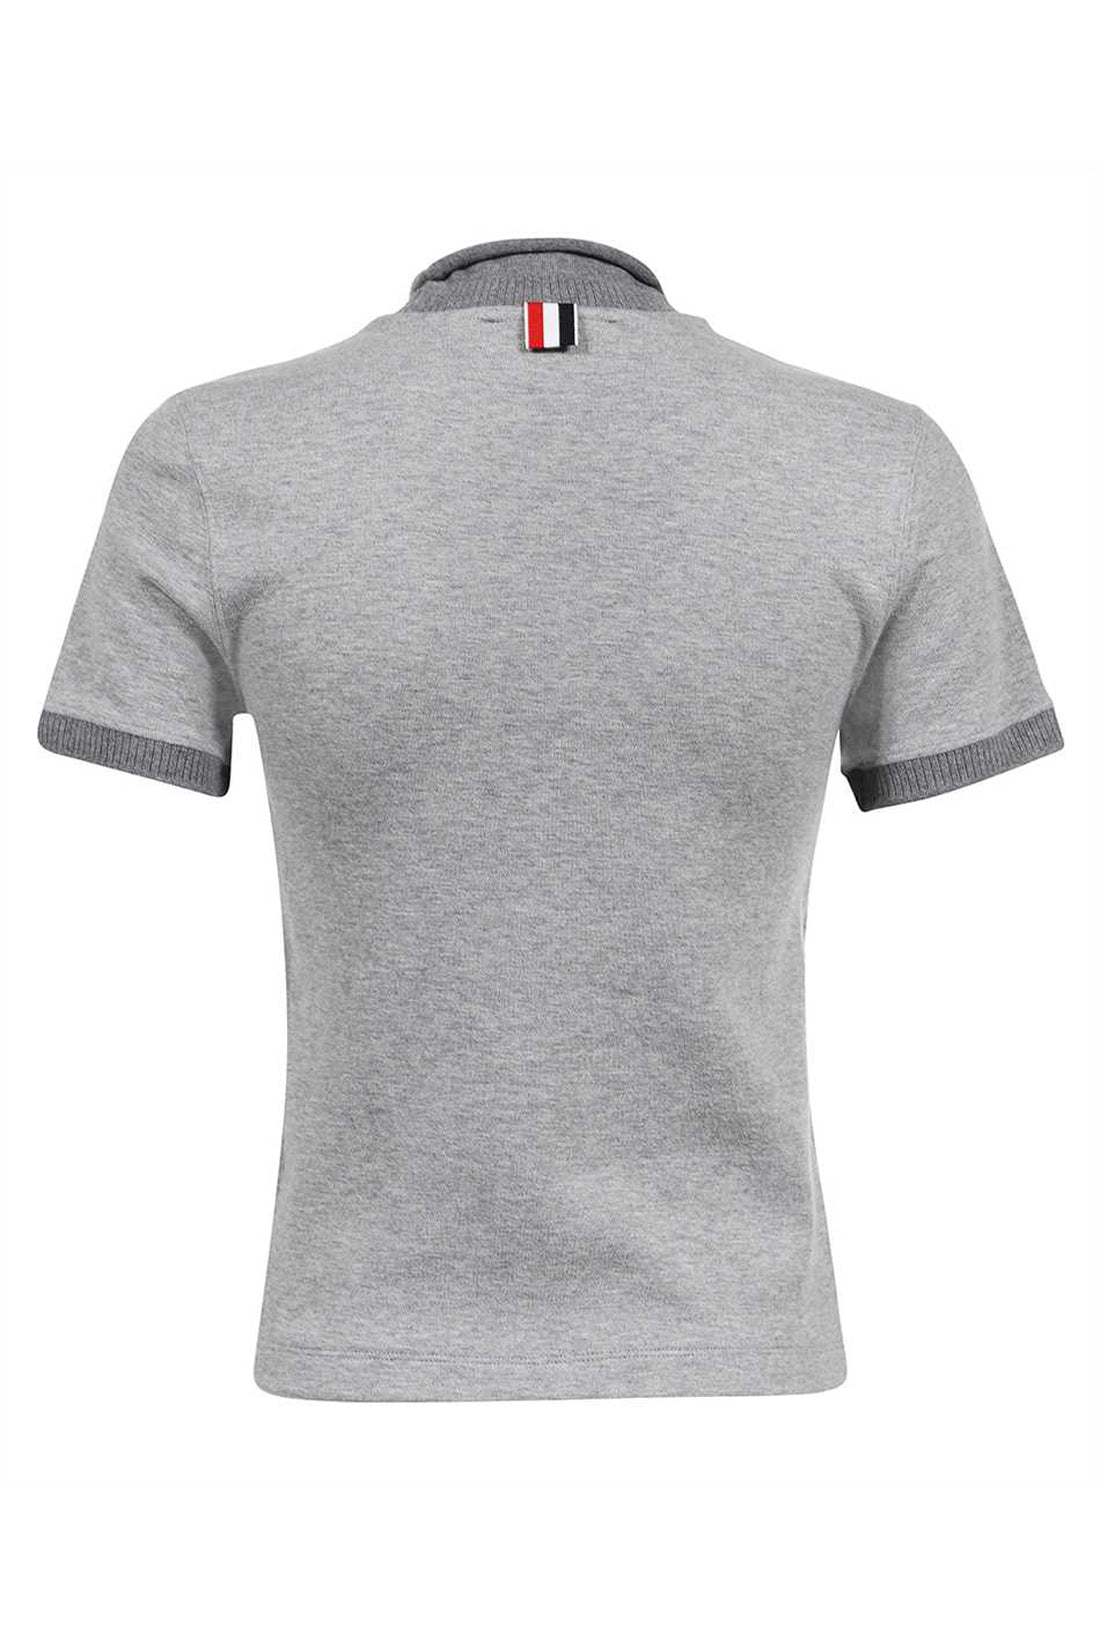 Thom Browne-OUTLET-SALE-Logo cotton t-shirt-ARCHIVIST